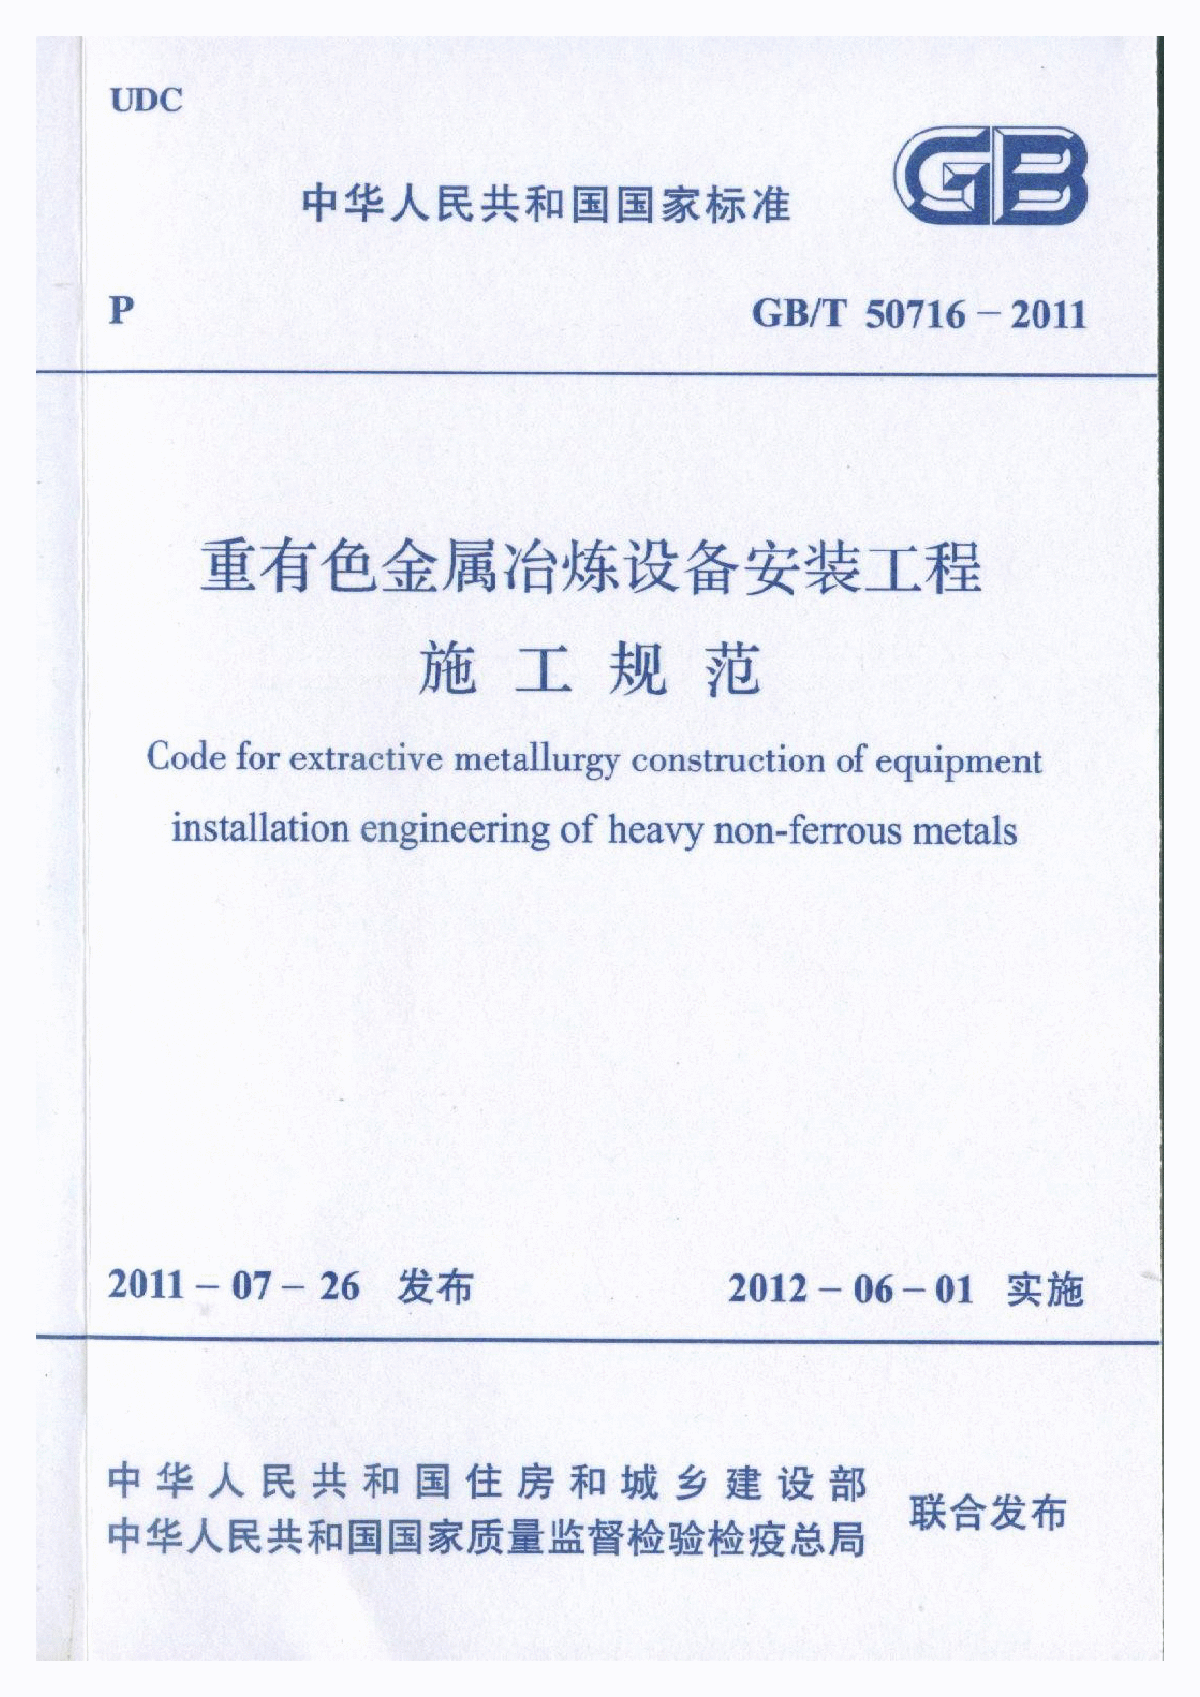 GBT50716-2011 重有色金属冶炼设备安装工程施工规范